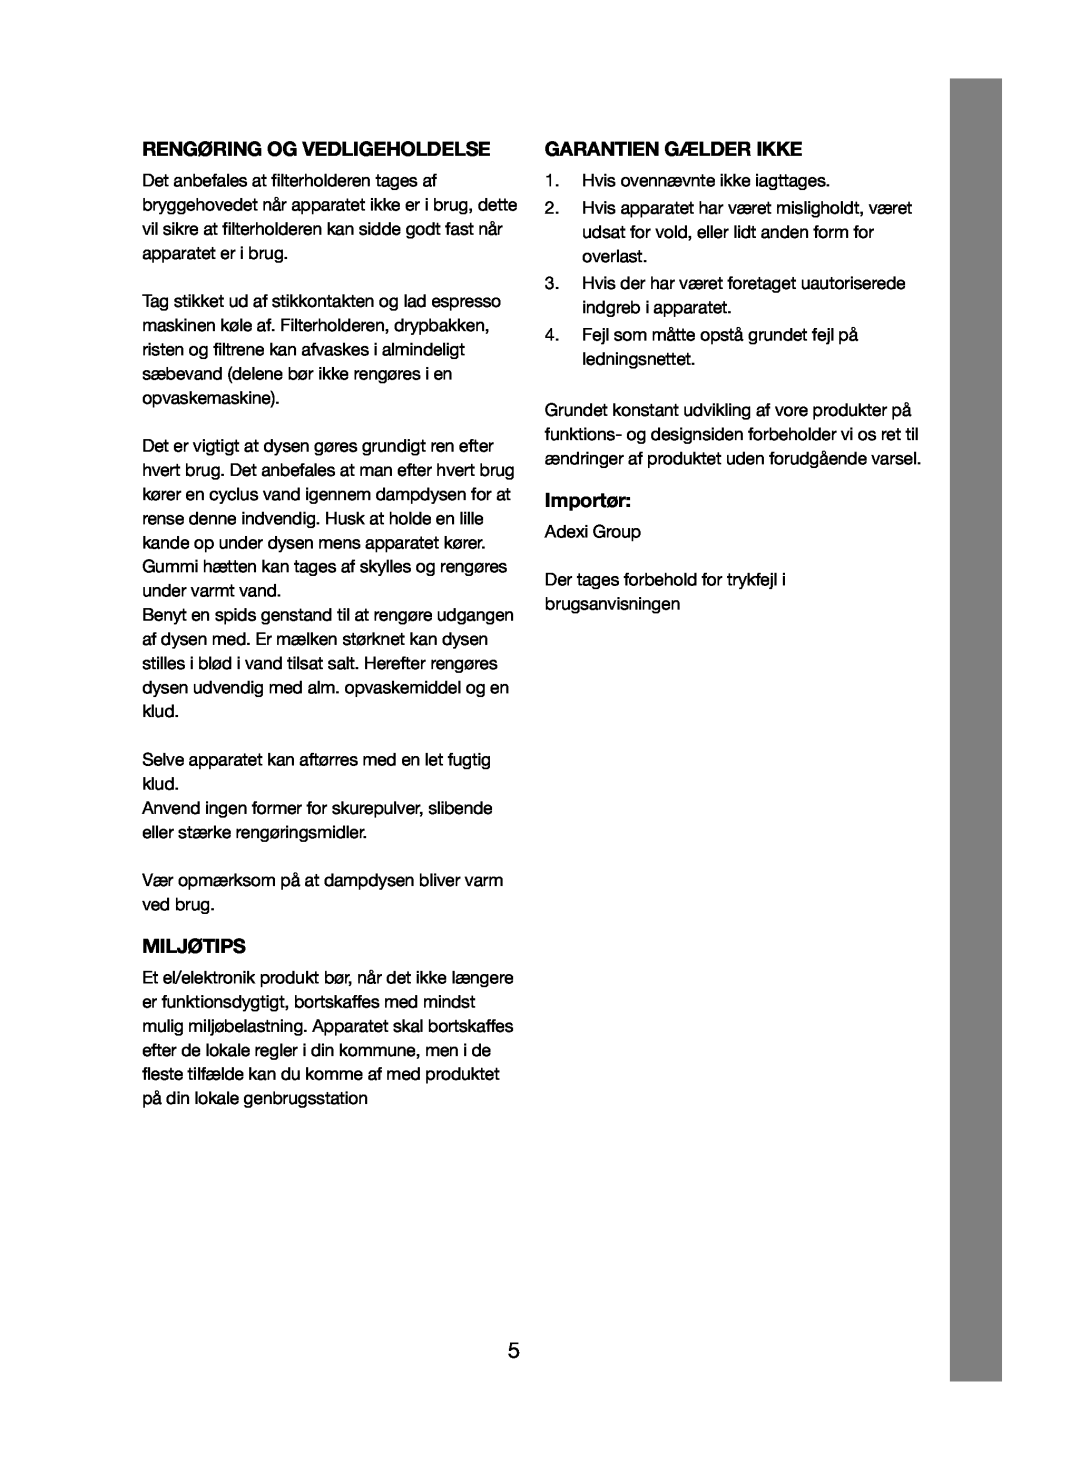 Melissa 245-032 manual Rengøring Og Vedligeholdelse, Miljøtips, Garantien Gælder Ikke, Importør 